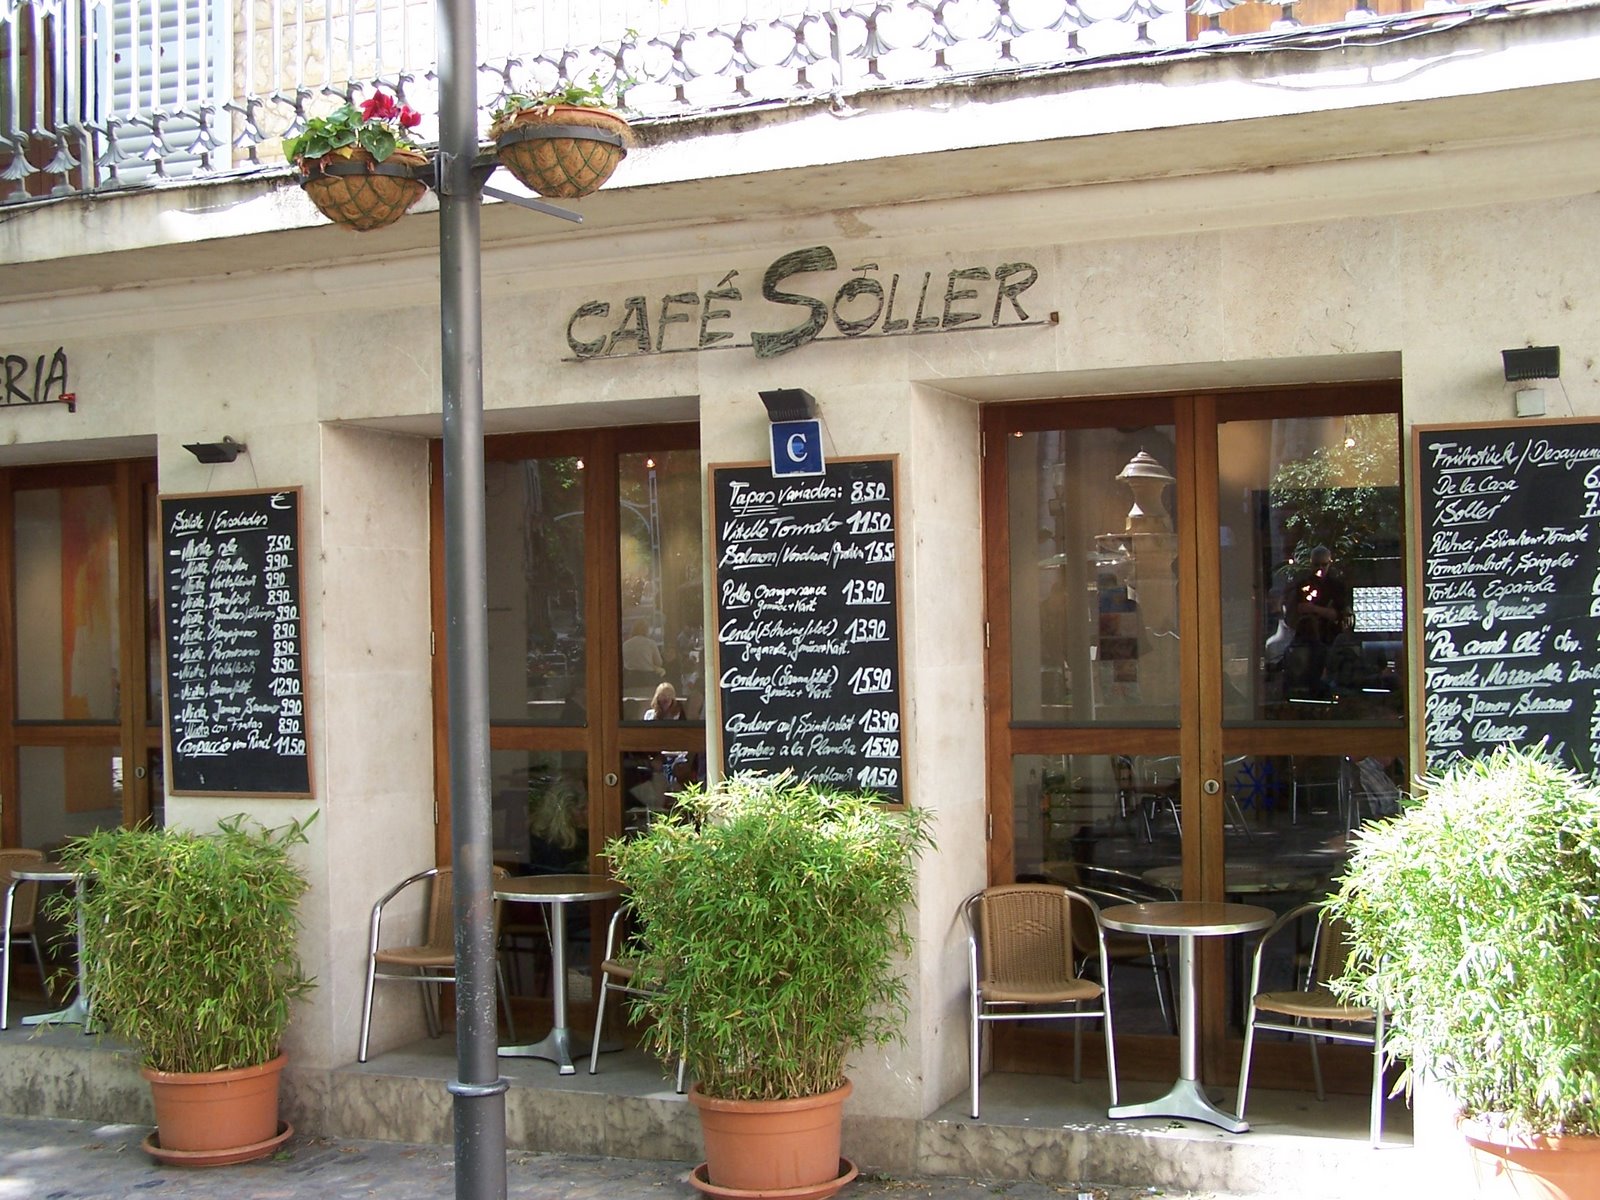 Cafe Soller, Majorca